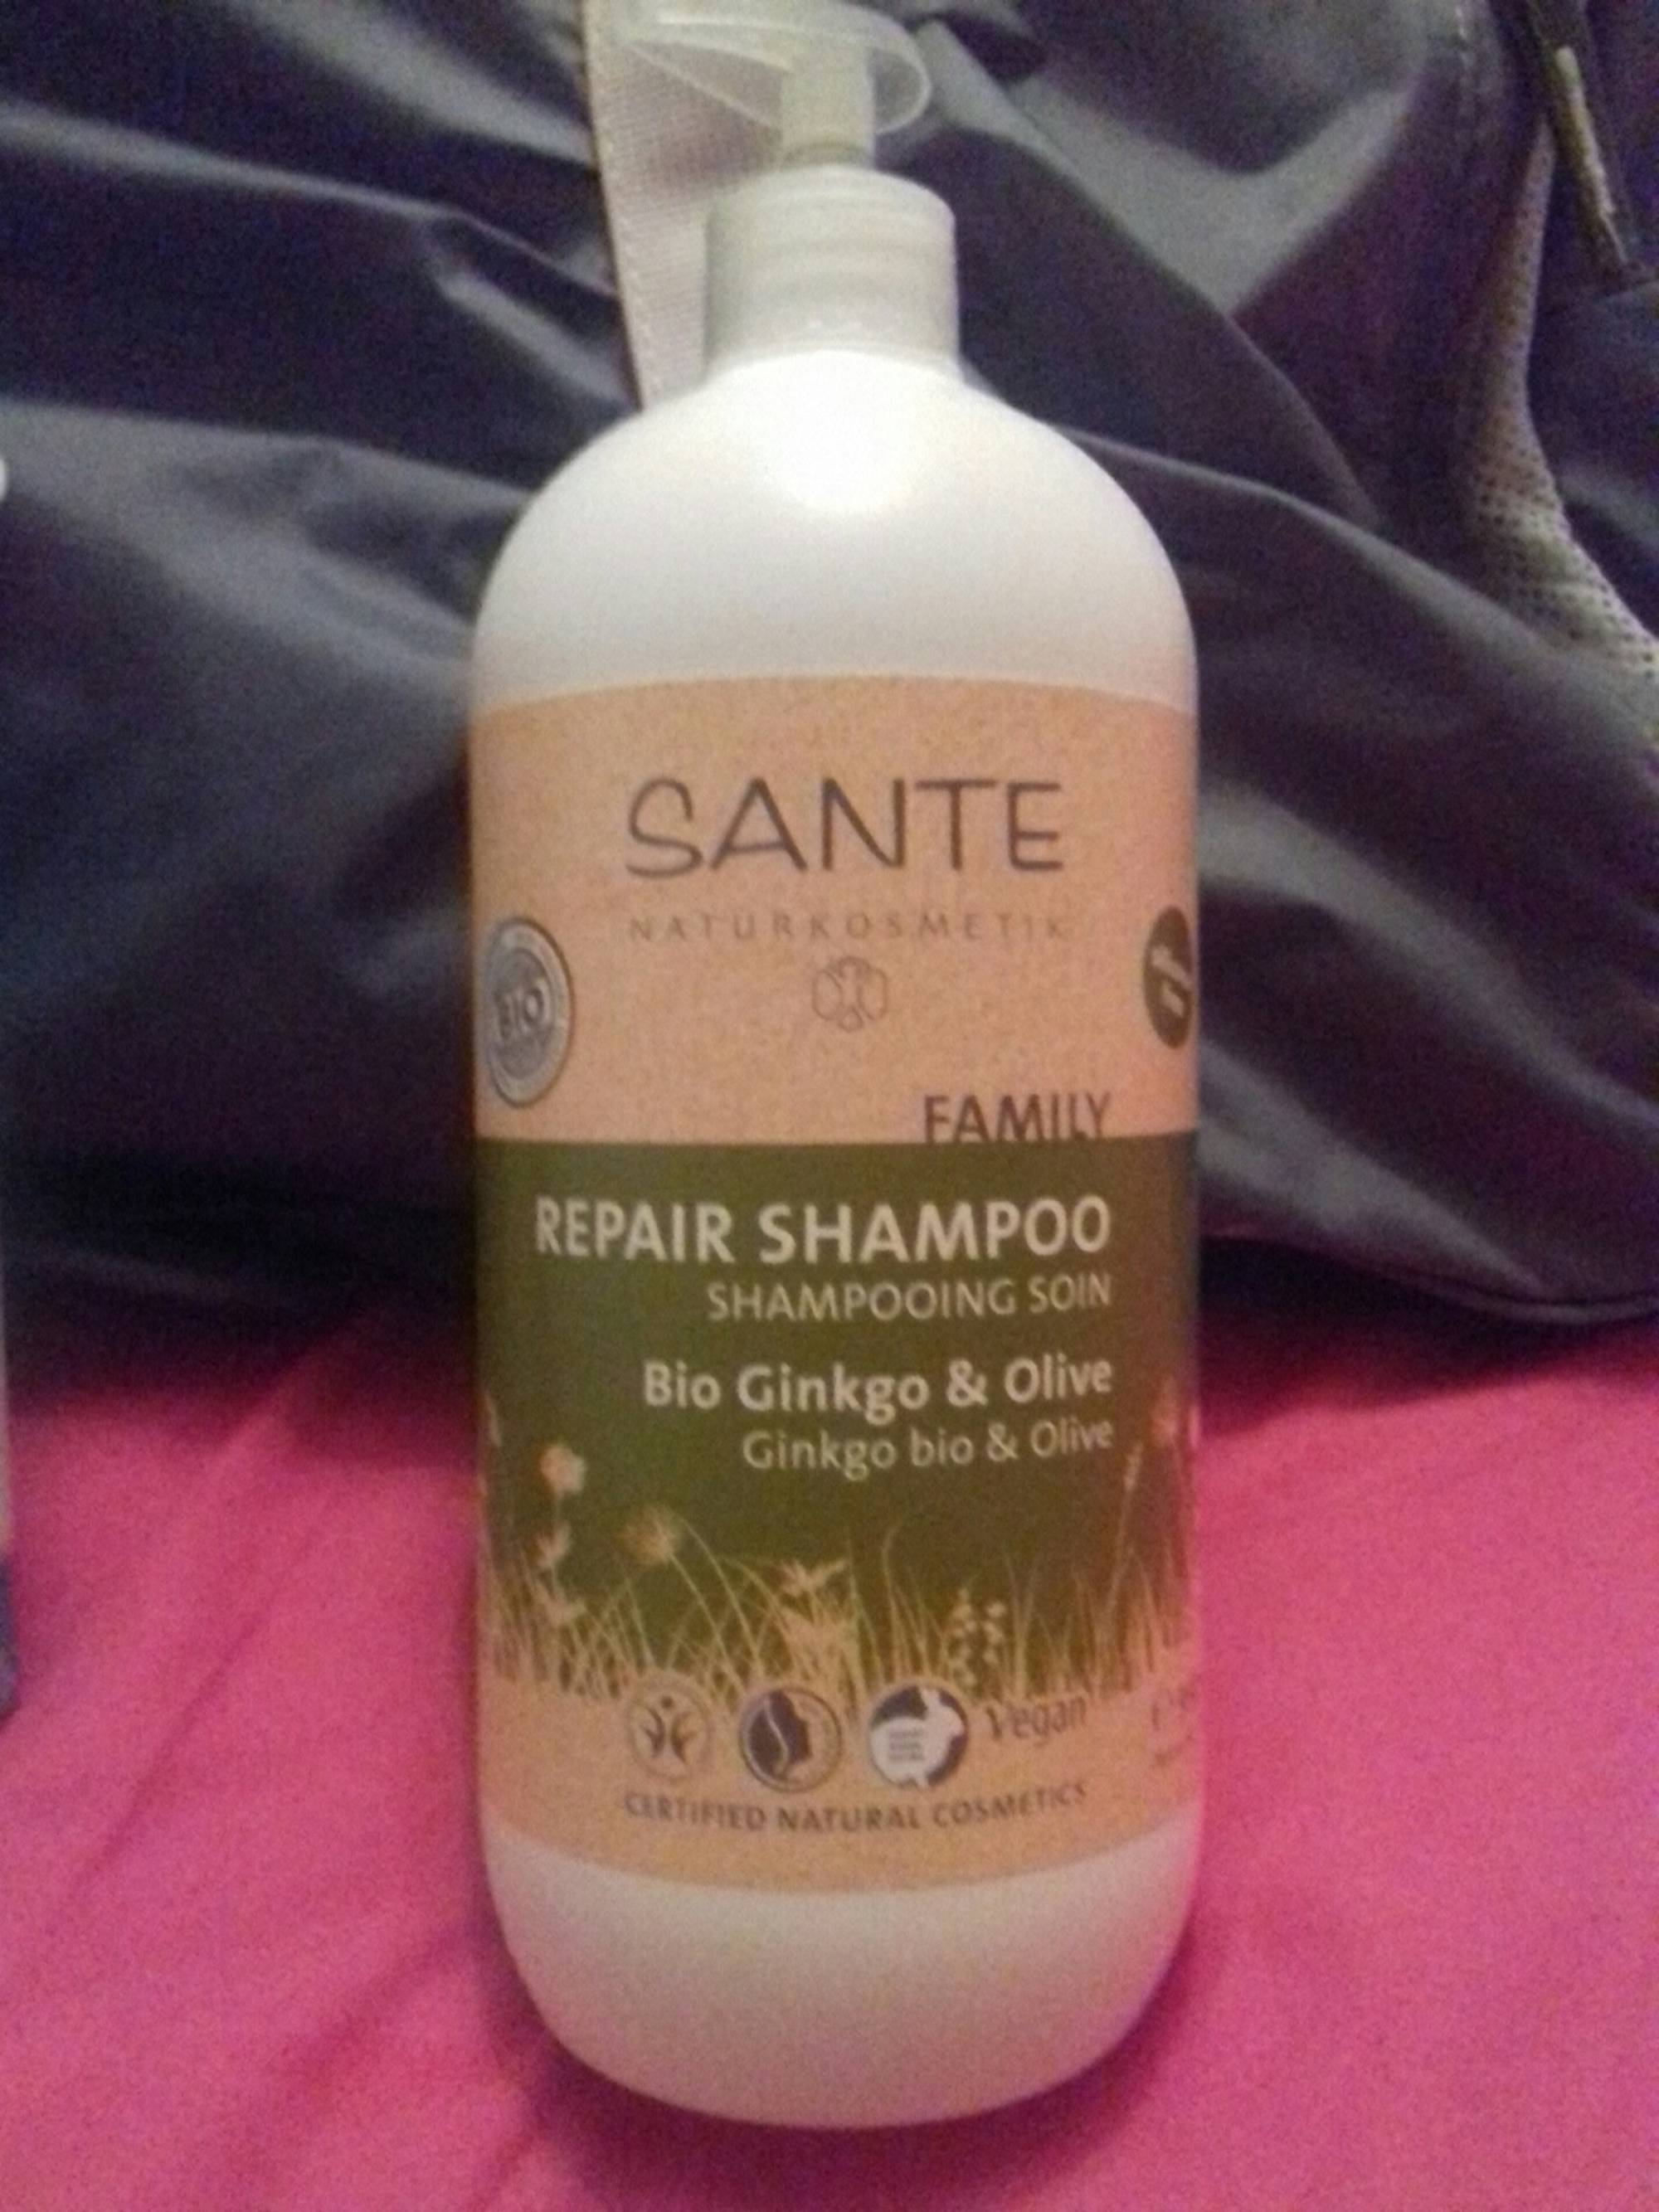 SANTE NATURKOSMETIK - Shampooing soin ginkgo & olive bio 